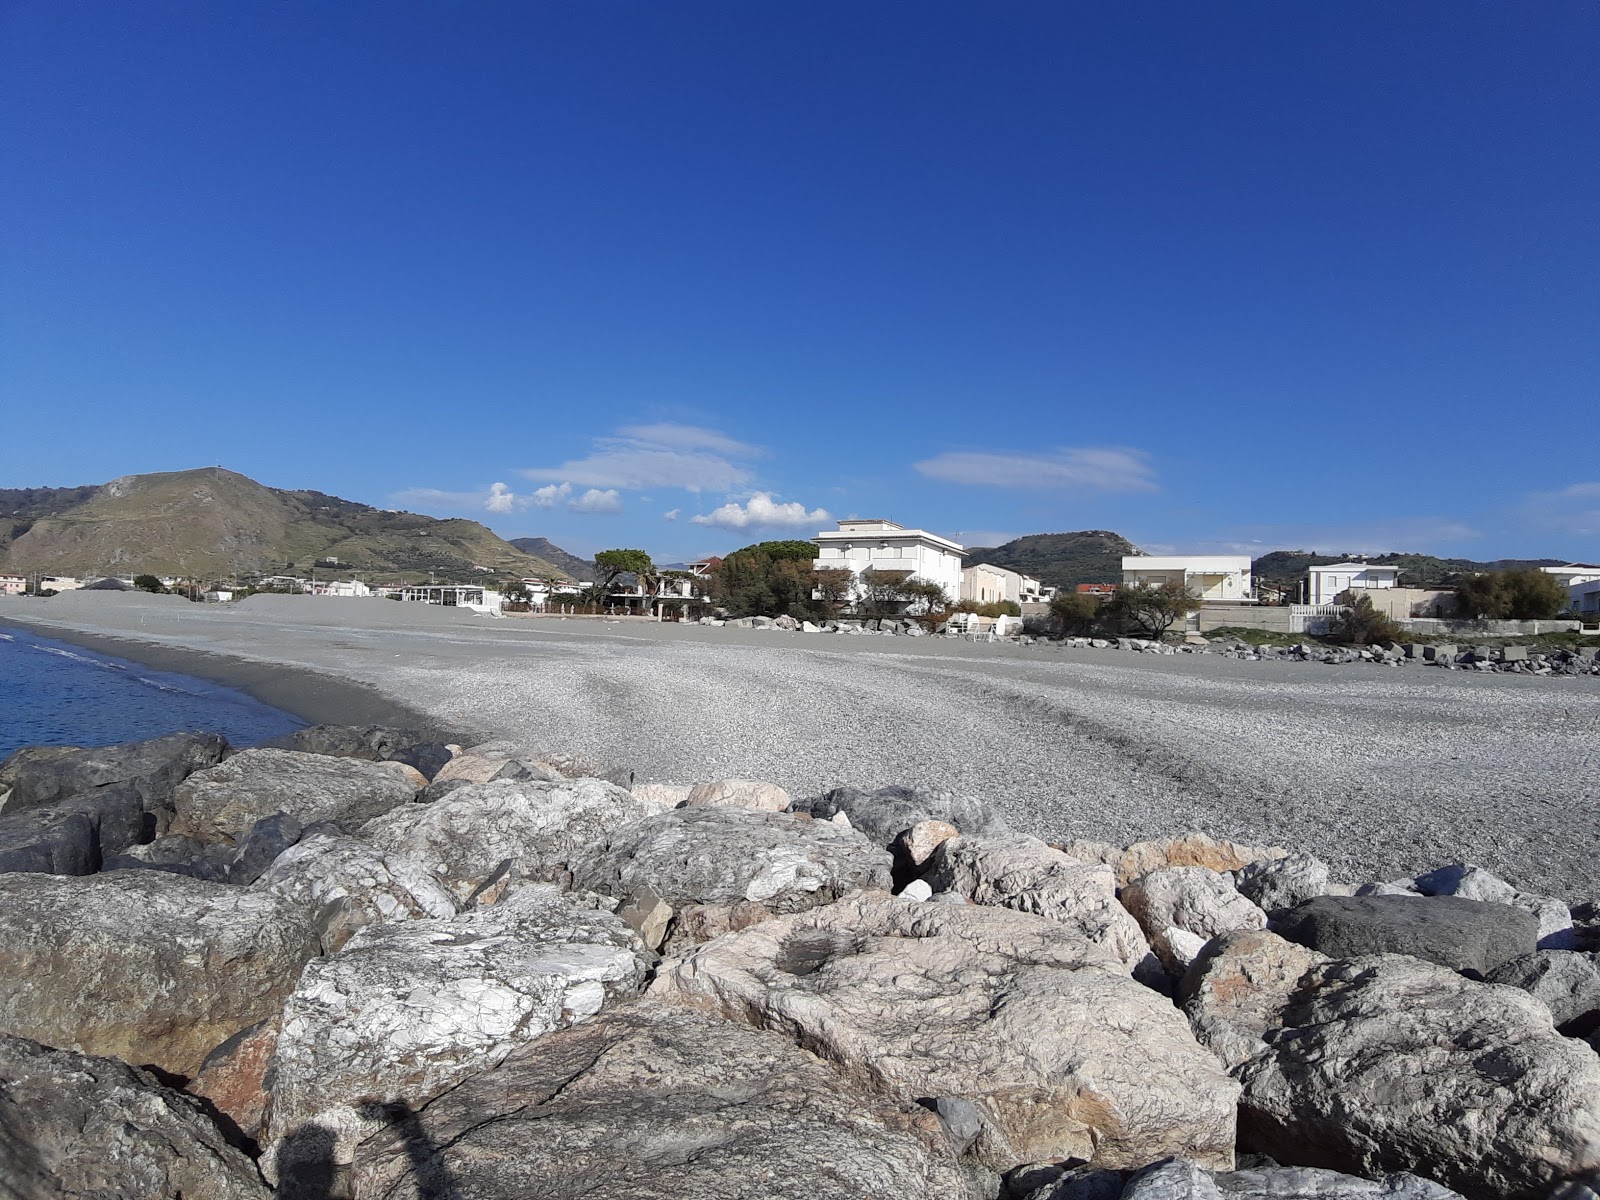 Campora San Giovanni'in fotoğrafı gri ince çakıl taş yüzey ile